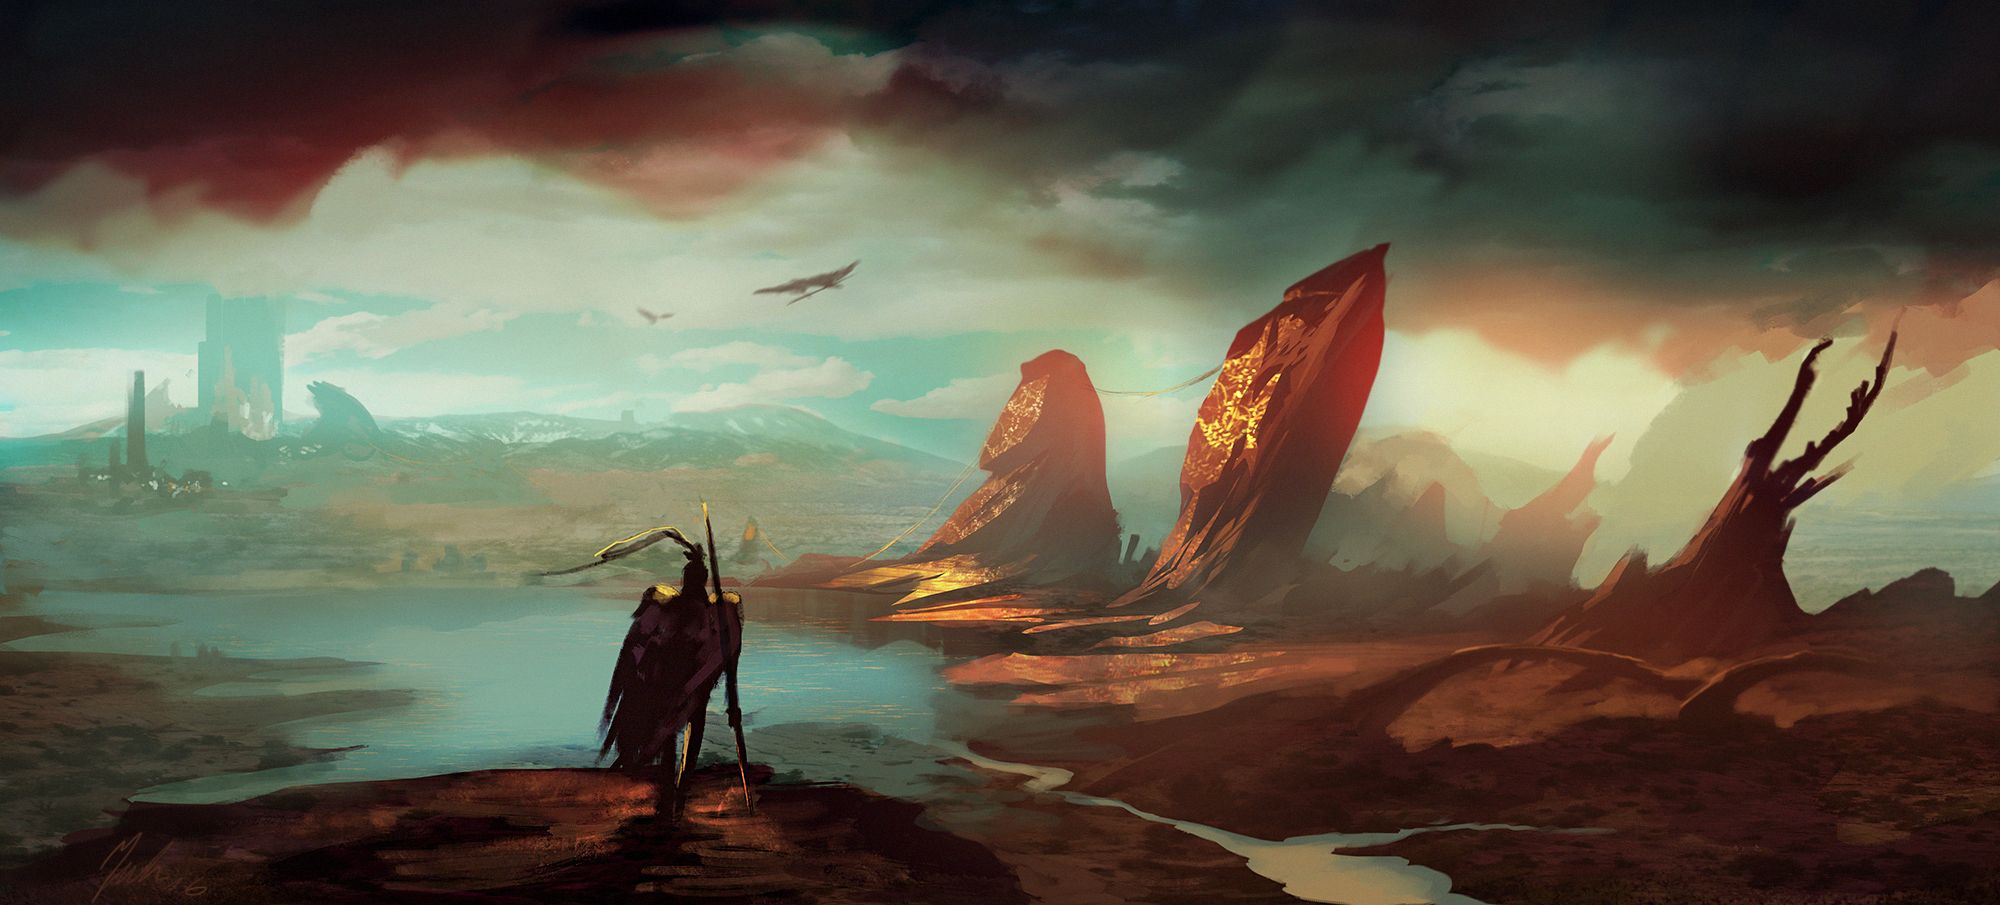 Download mobile wallpaper Landscape, Fantasy, Warrior for free.